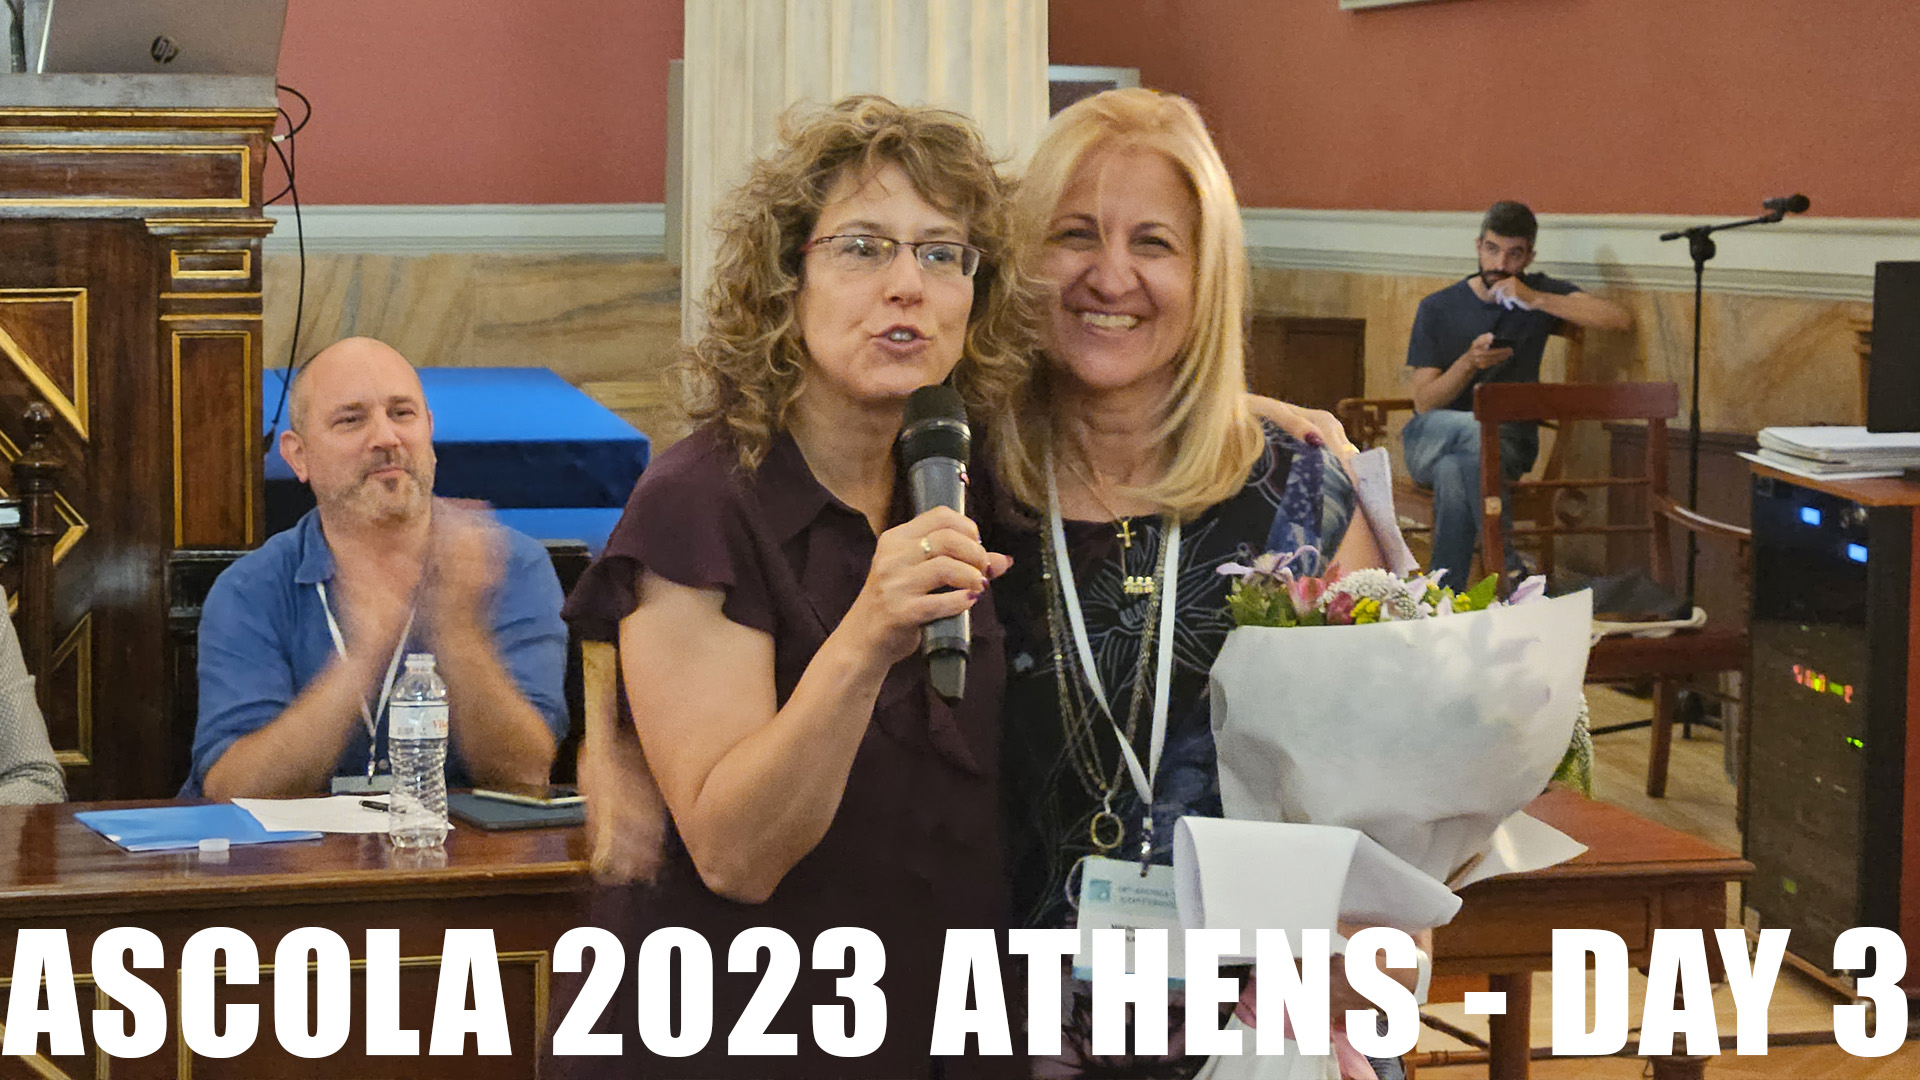 Ascola 2023 Athens - DAY 3